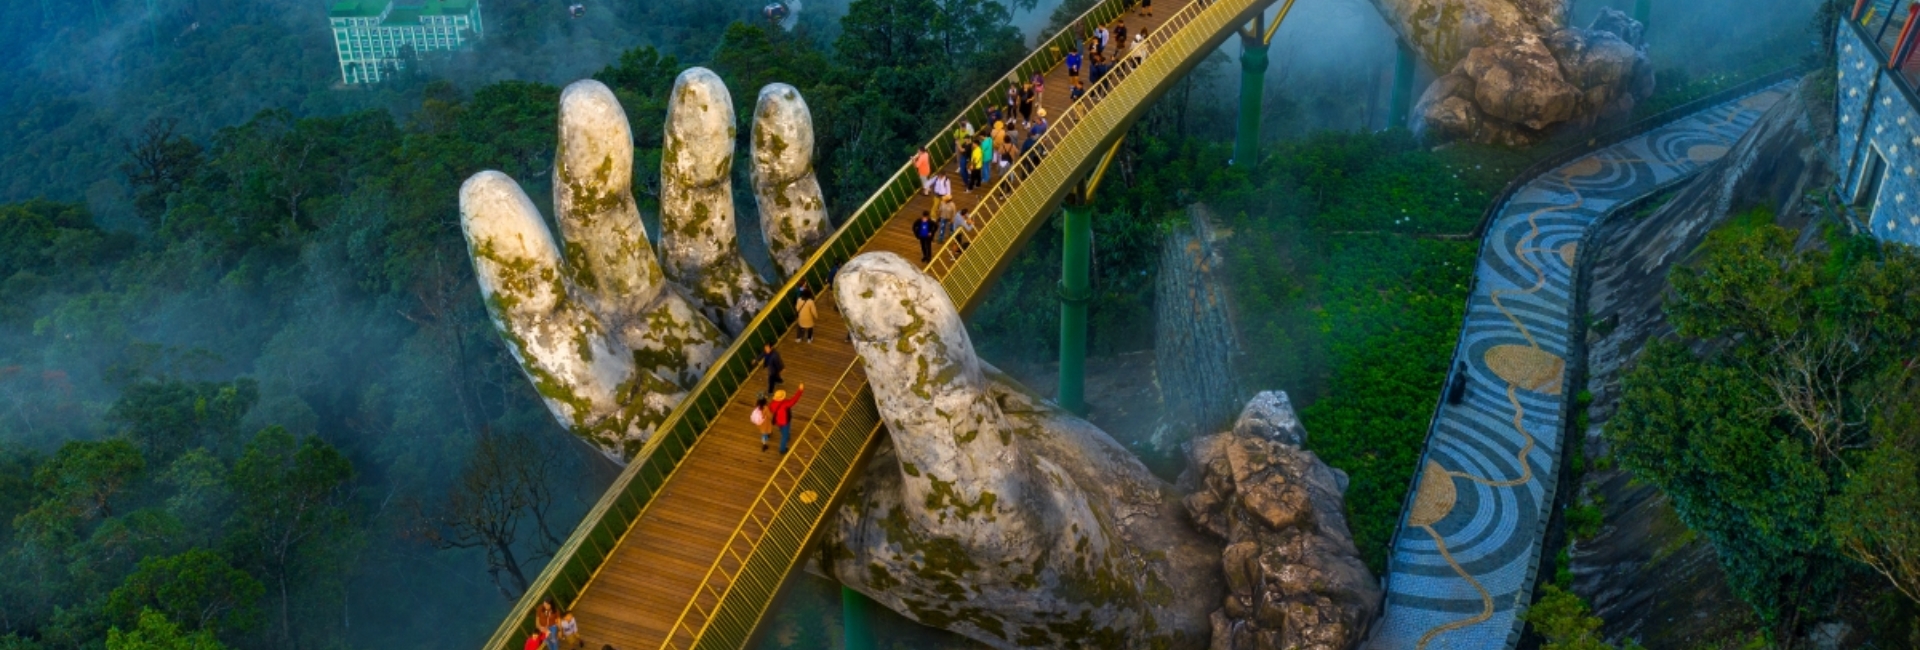 Golden Hand Bridge Danang – Is it worth to visit?